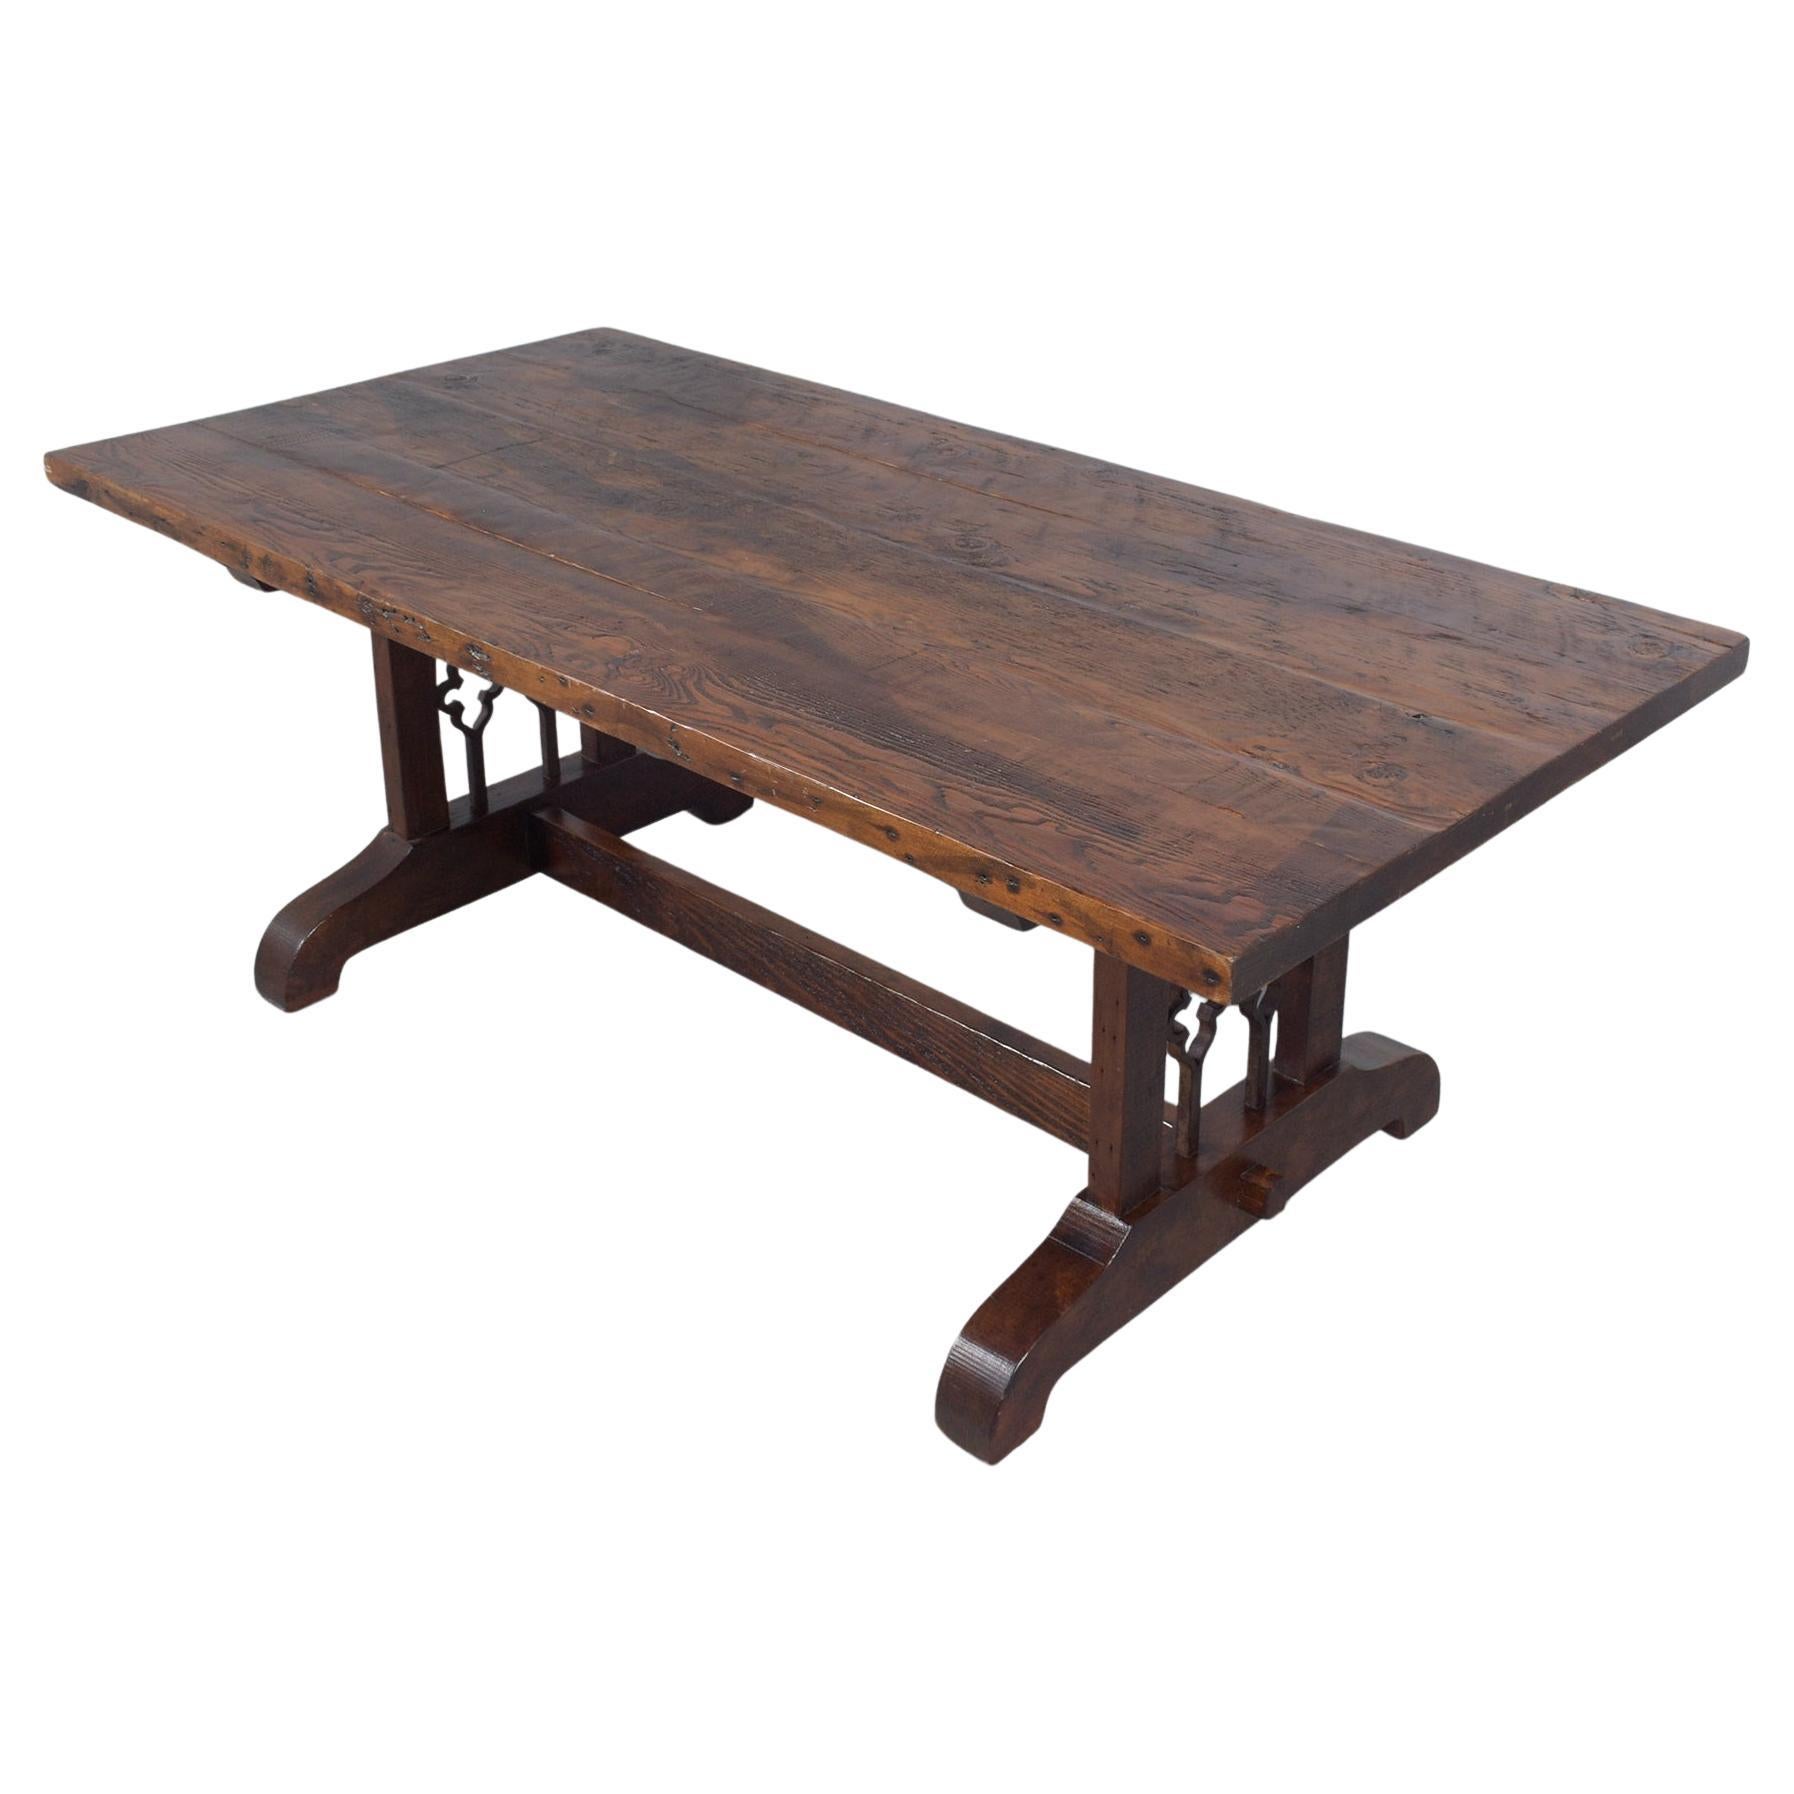 Table de salle à manger vintage en Wood Wood : L'artisanat Classic rencontre l'Elegance Modernity